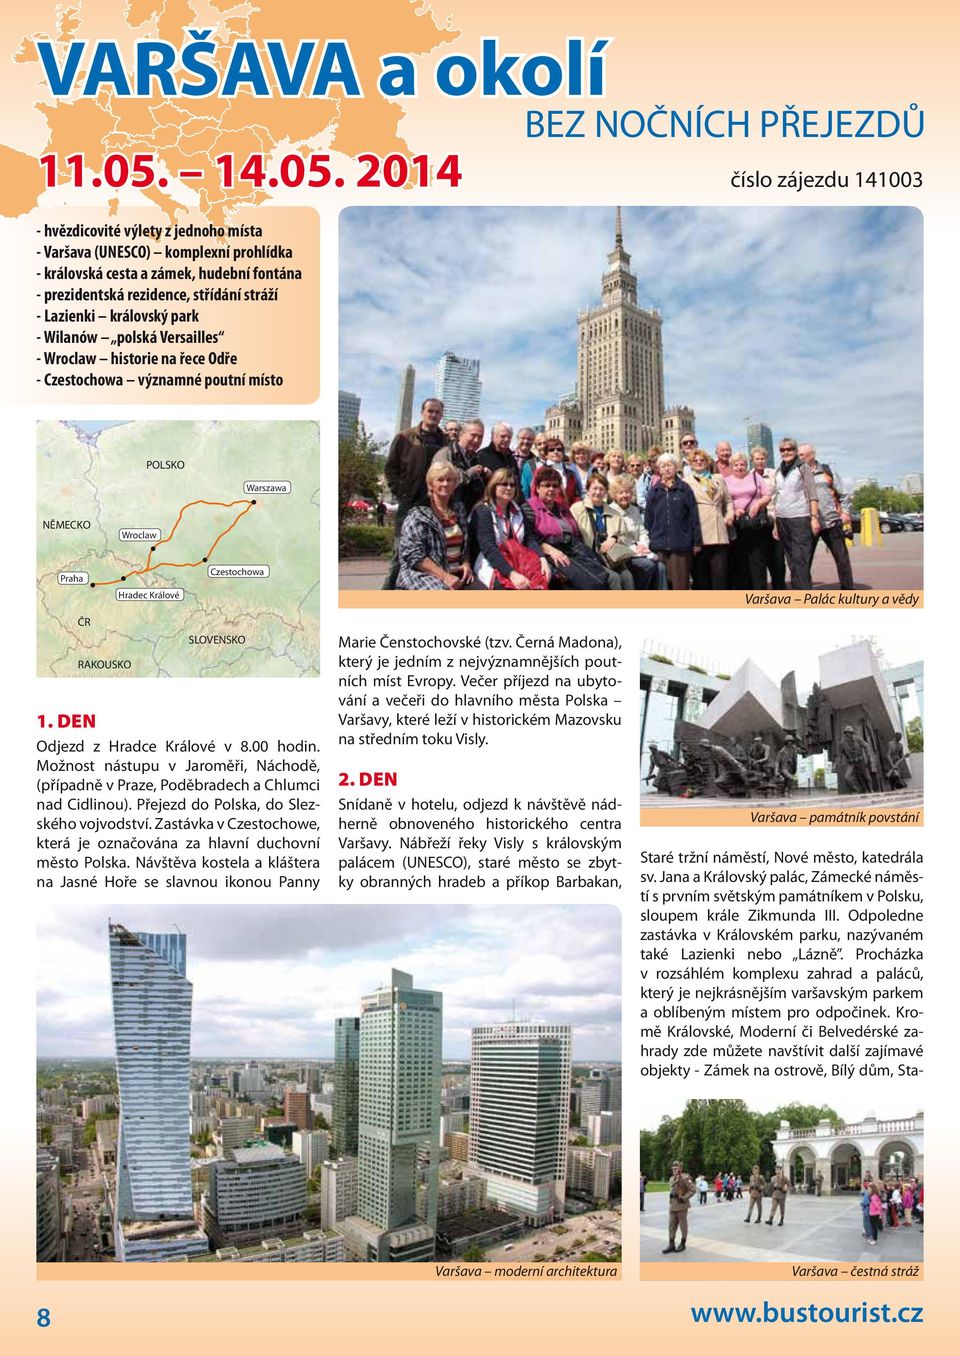 2014 - hvězdicovité výlety z jednoho místa - Varšava (UNESCO) komplexní prohlídka - královská cesta a zámek, hudební fontána - prezidentská rezidence, střídání stráží - Lazienki královský park -